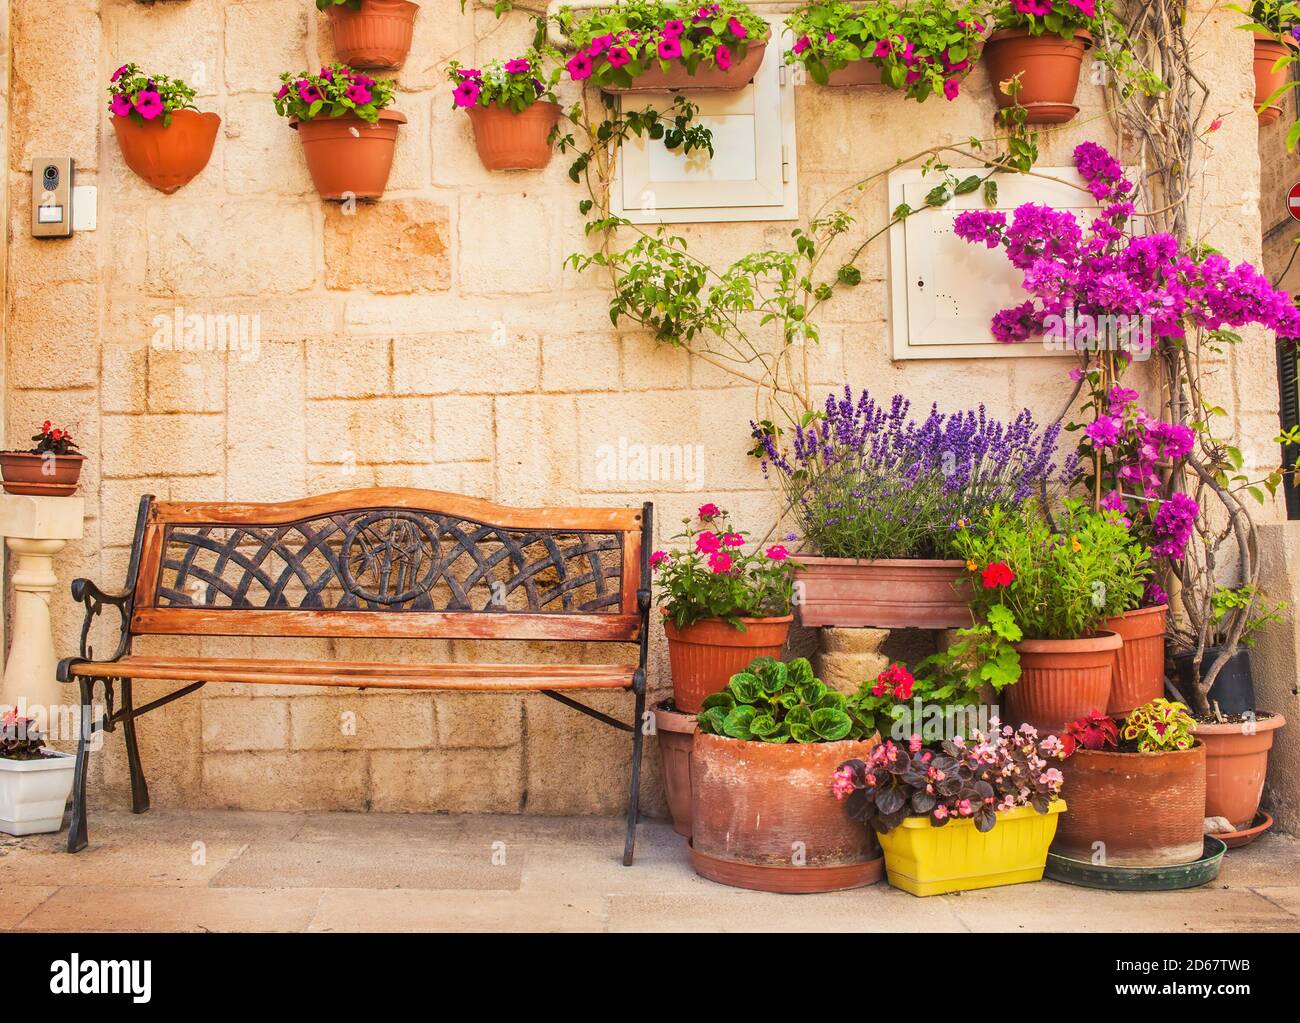 Un banc entouré de nombreux pots de fleurs dans la vieille ville de Monopoli, Puglia, Italie Banque D'Images